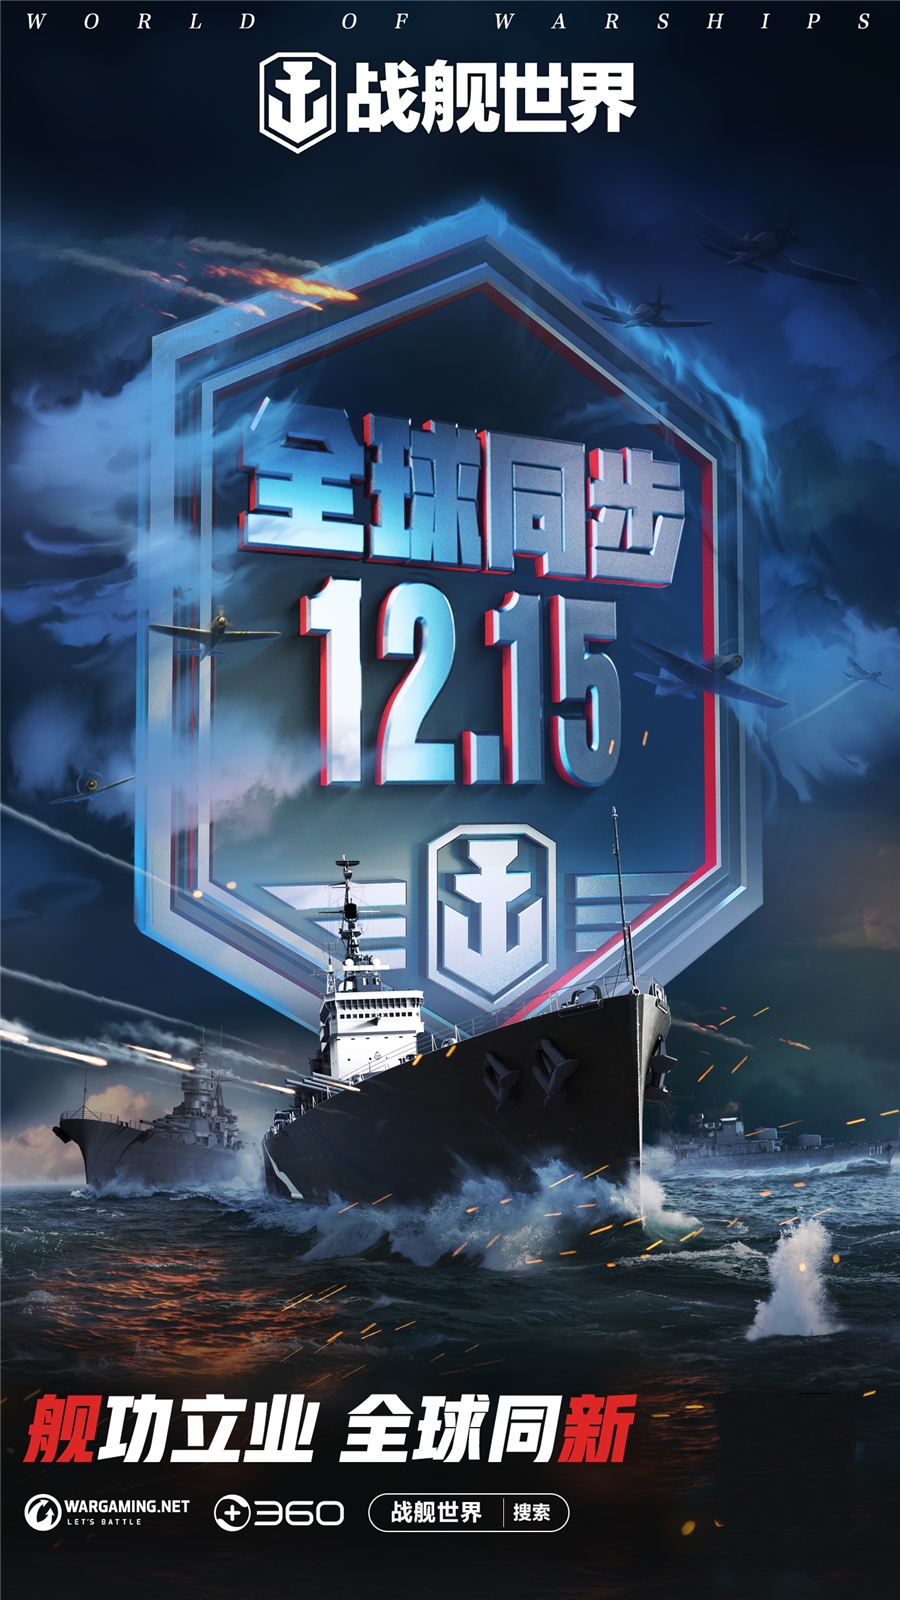 坦克世界  战舰世界  确认参加2021ChinaJoy大展